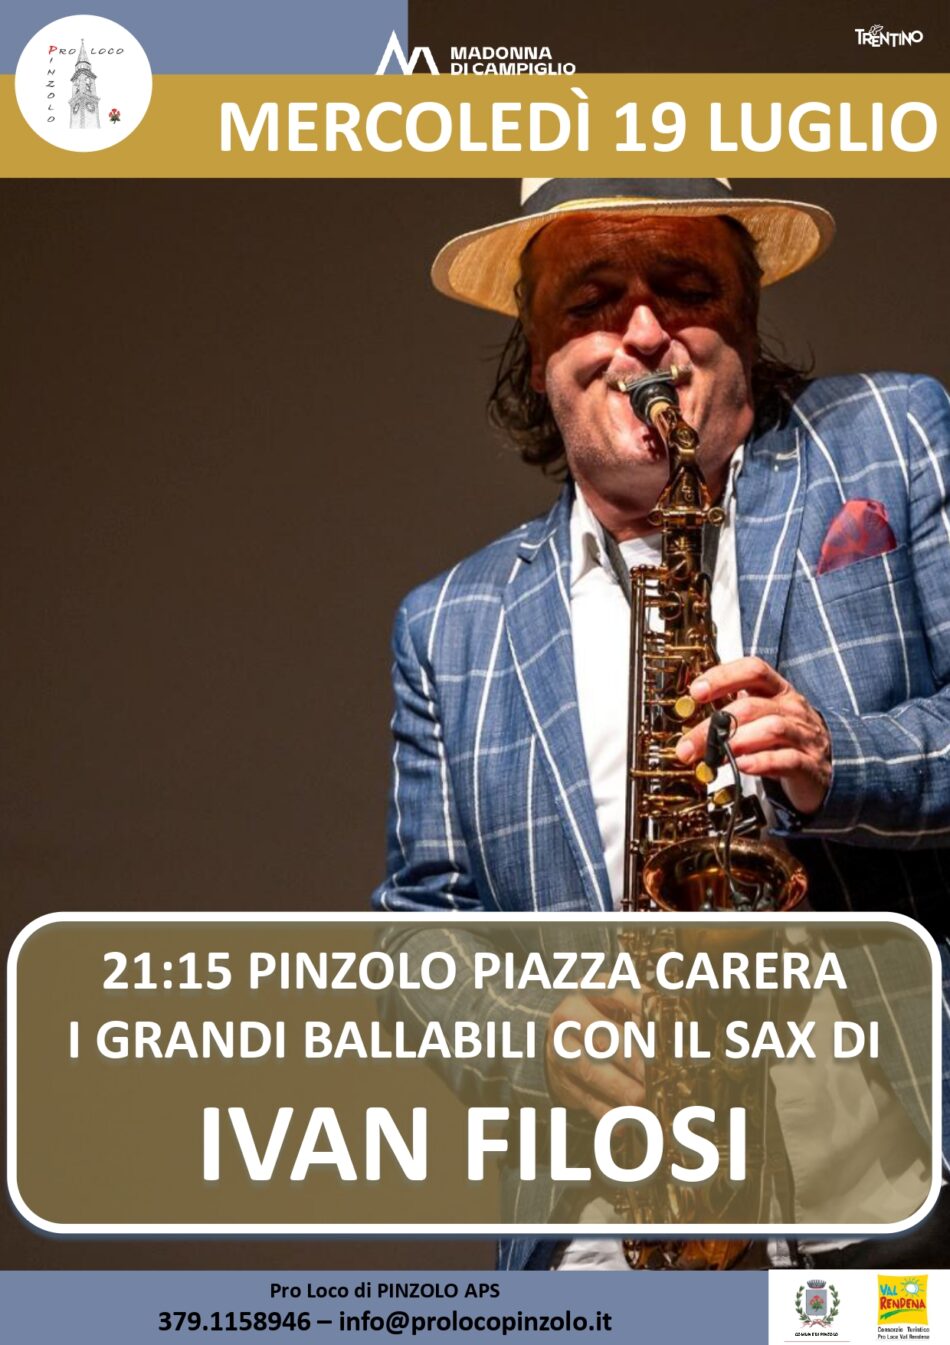 L’Estate è Pinzolo: Mercoledì 19 luglio ore 21.15 I grandi ballabili con il sax di IVAN FILOSI in piazza Carera